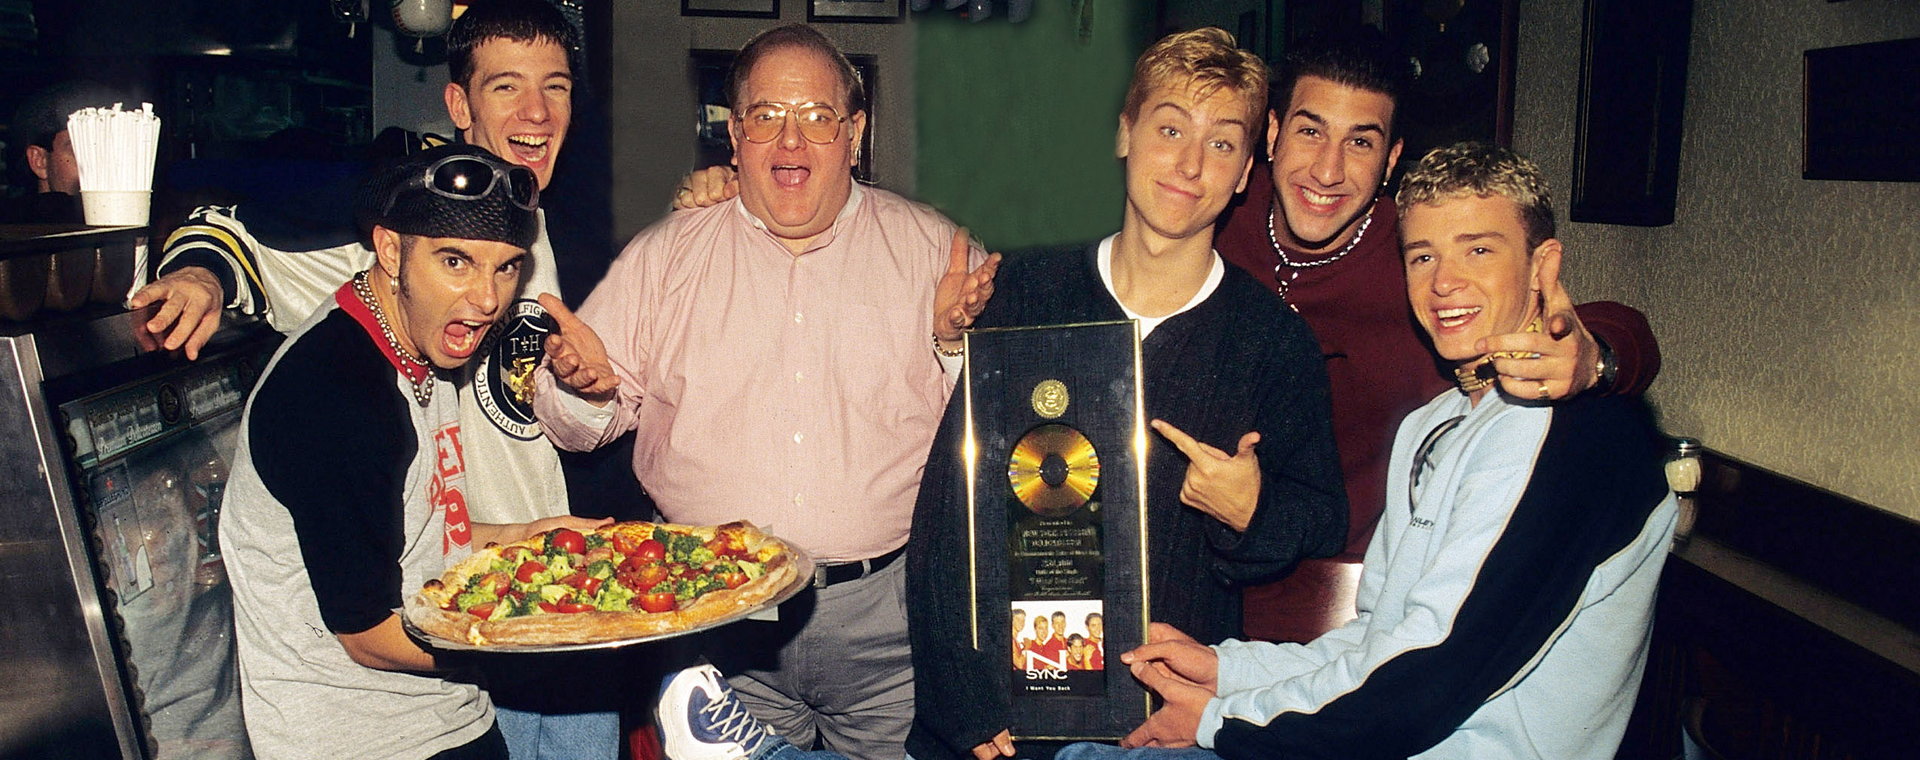 Louis Pearlman i członkowie zespołu 'NSync w pizzerii w Miami około 1996 r.